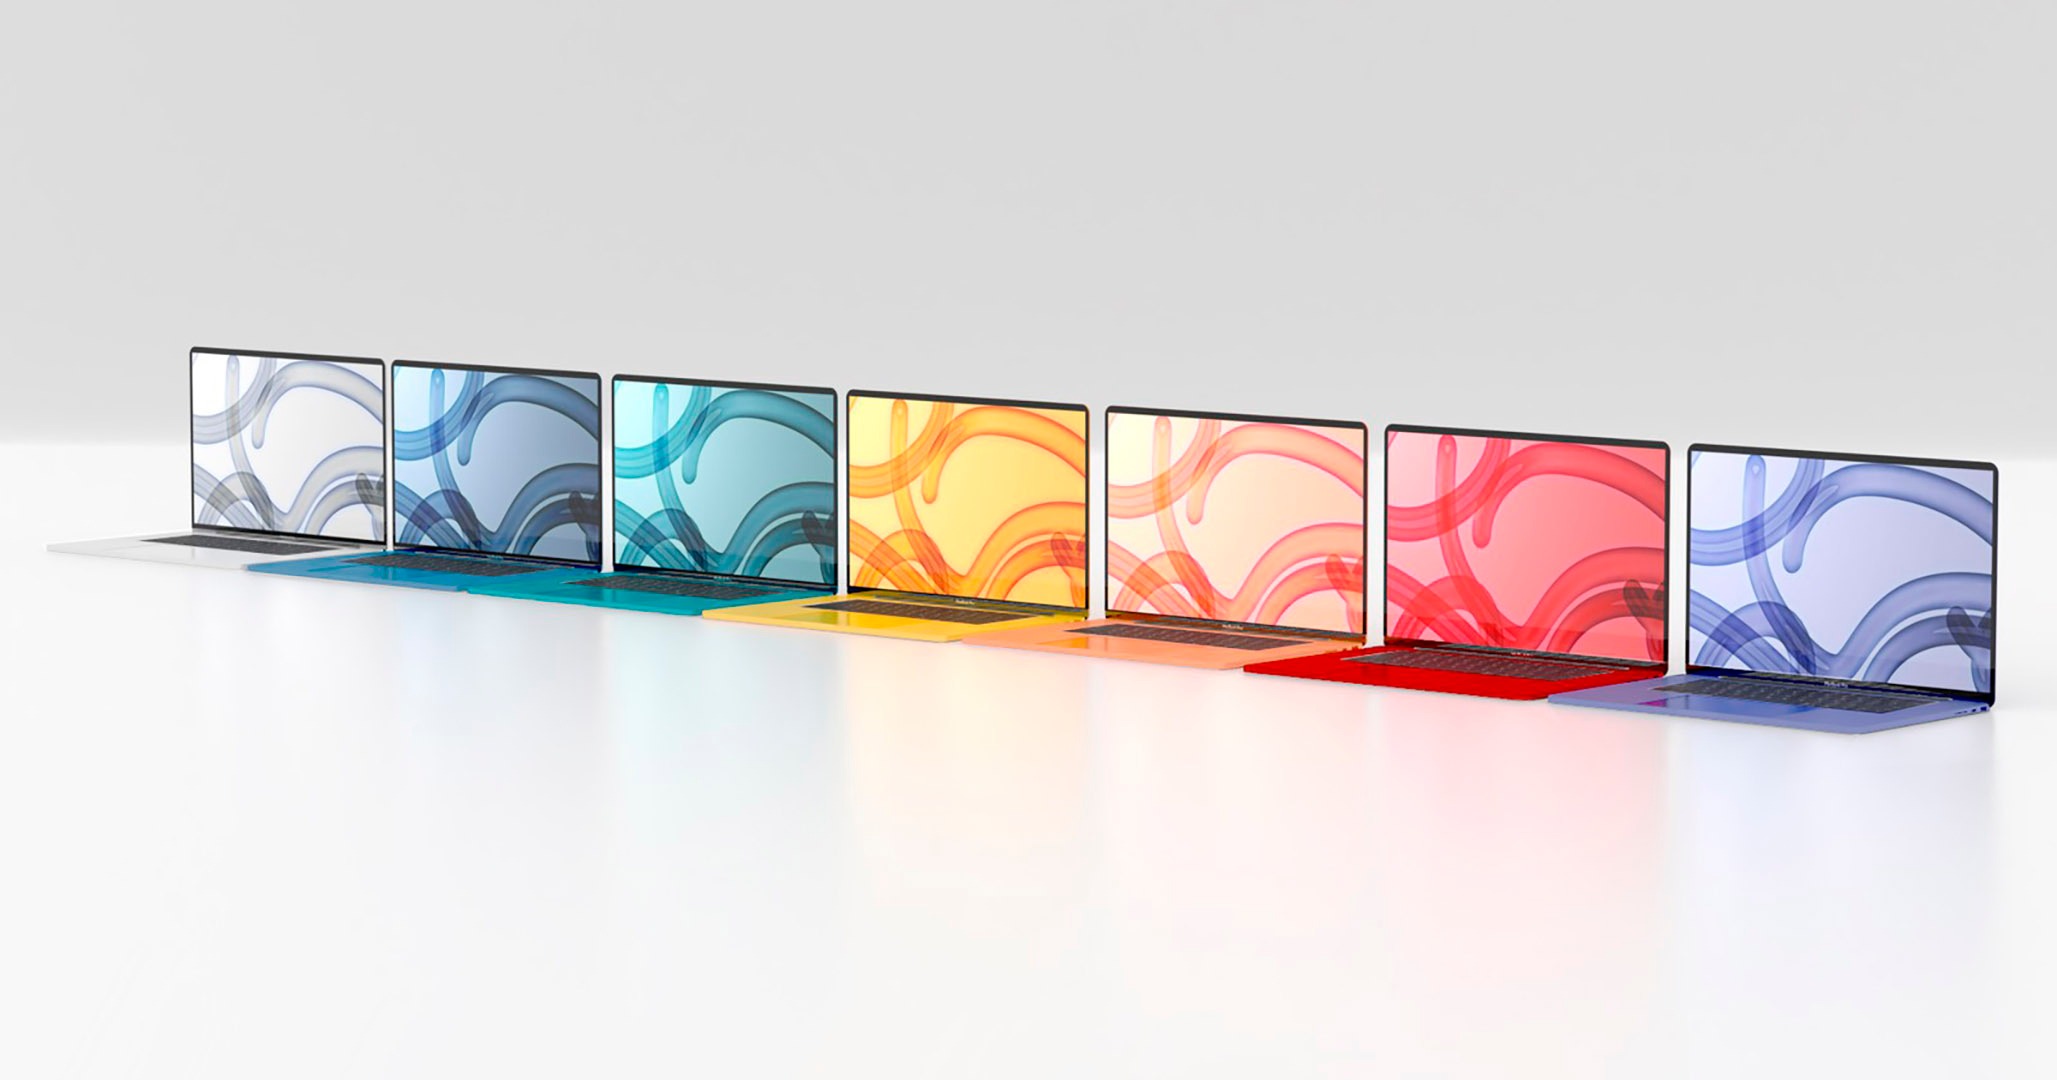 Hé lộ thông tin MacBook Air thế hệ mới sẽ có 7 tùy chọn màu sắc rực rỡ